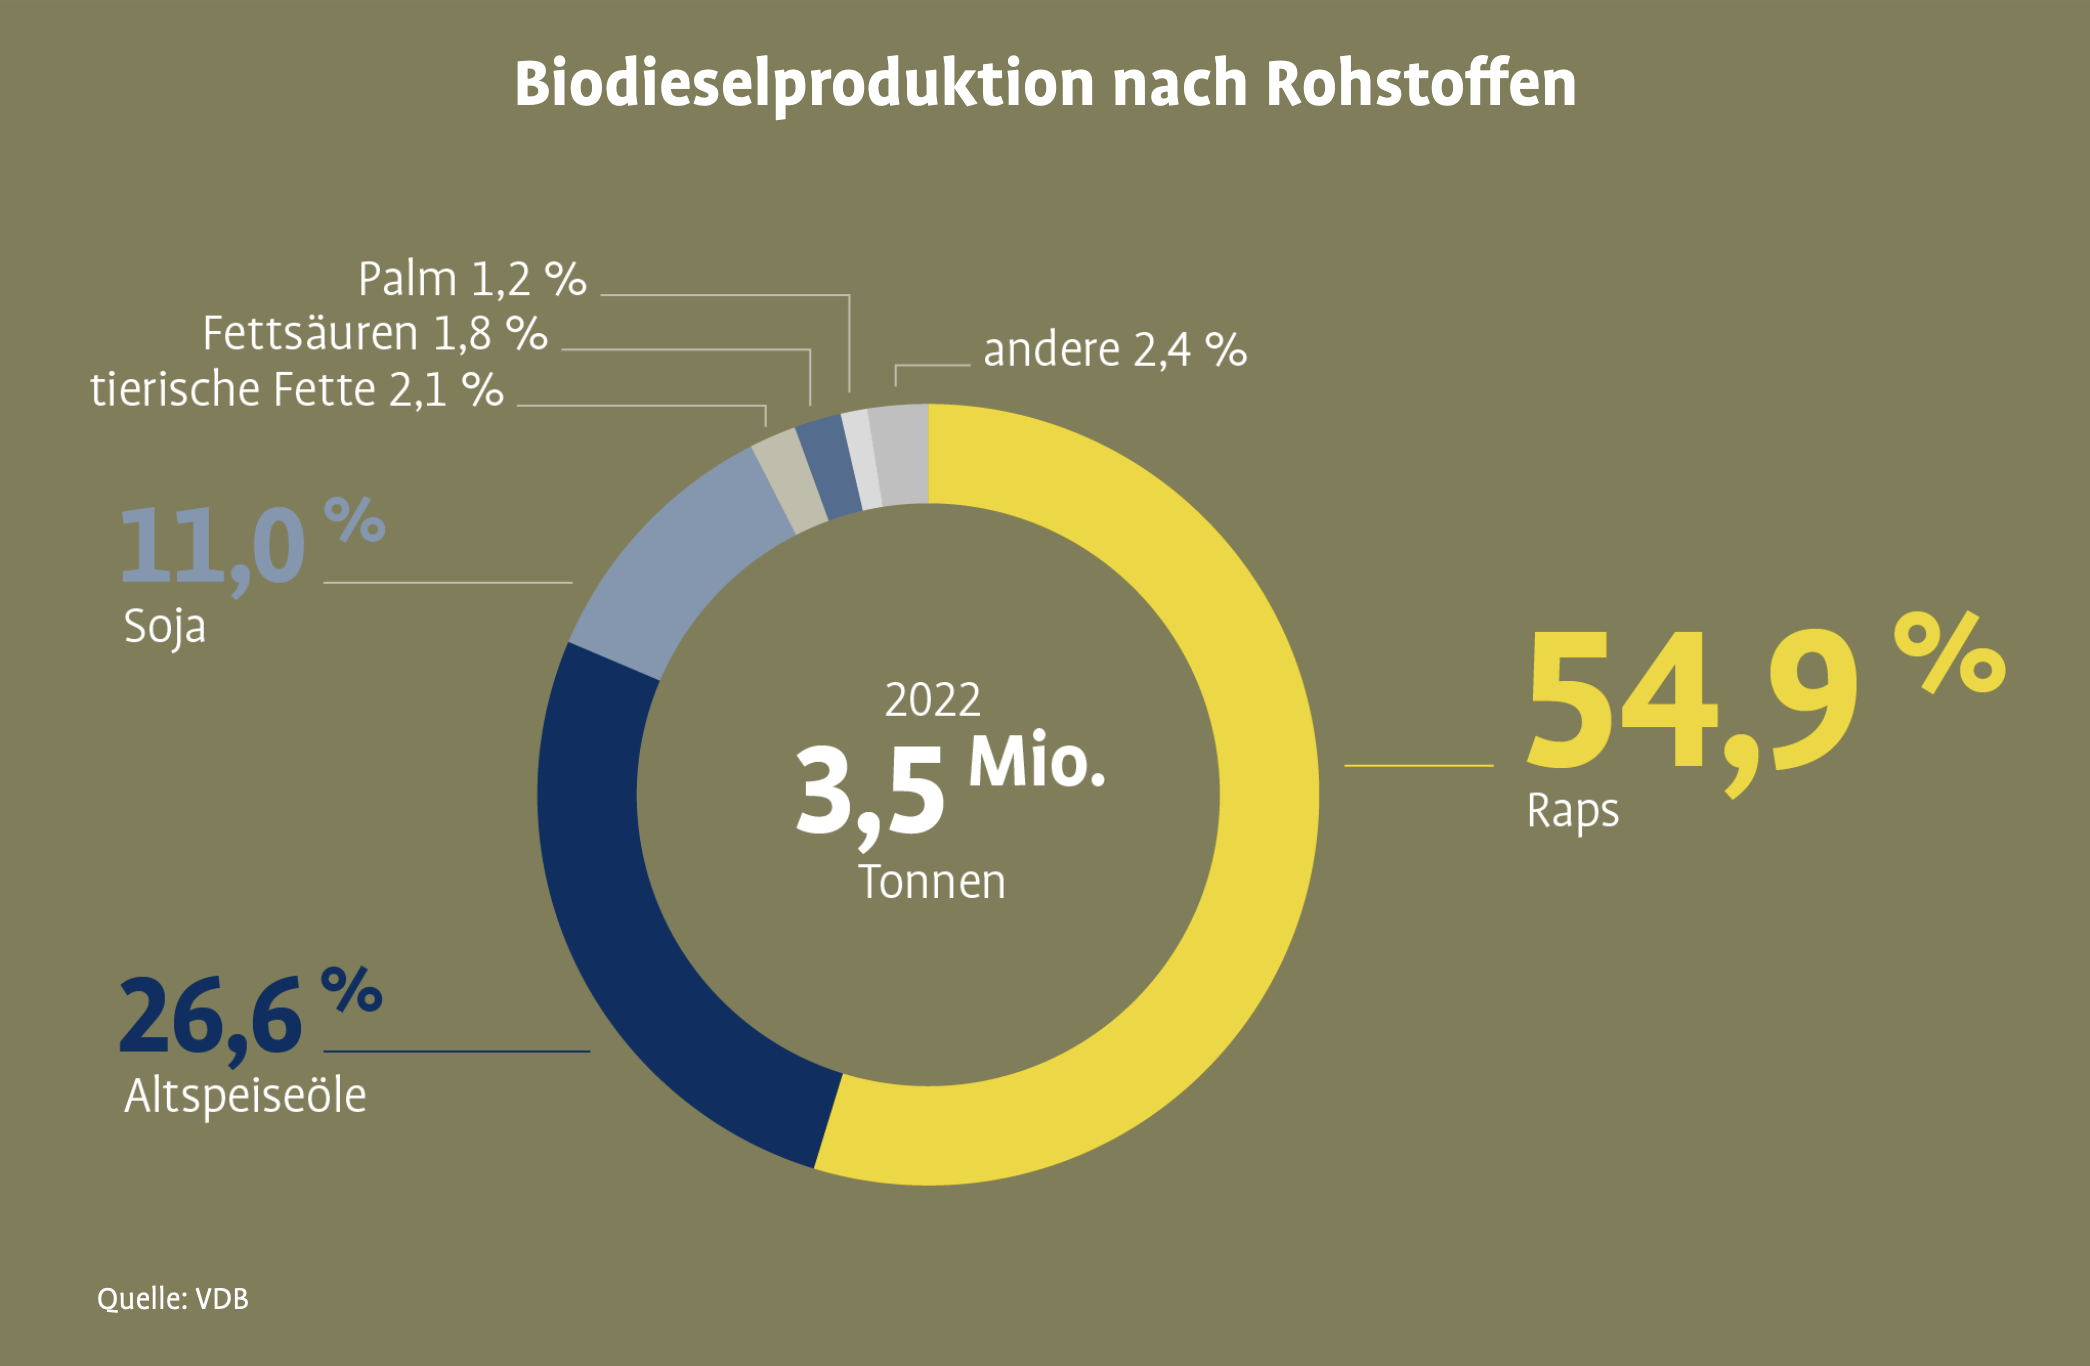 Biodieselproduktion nach Rohstoffen